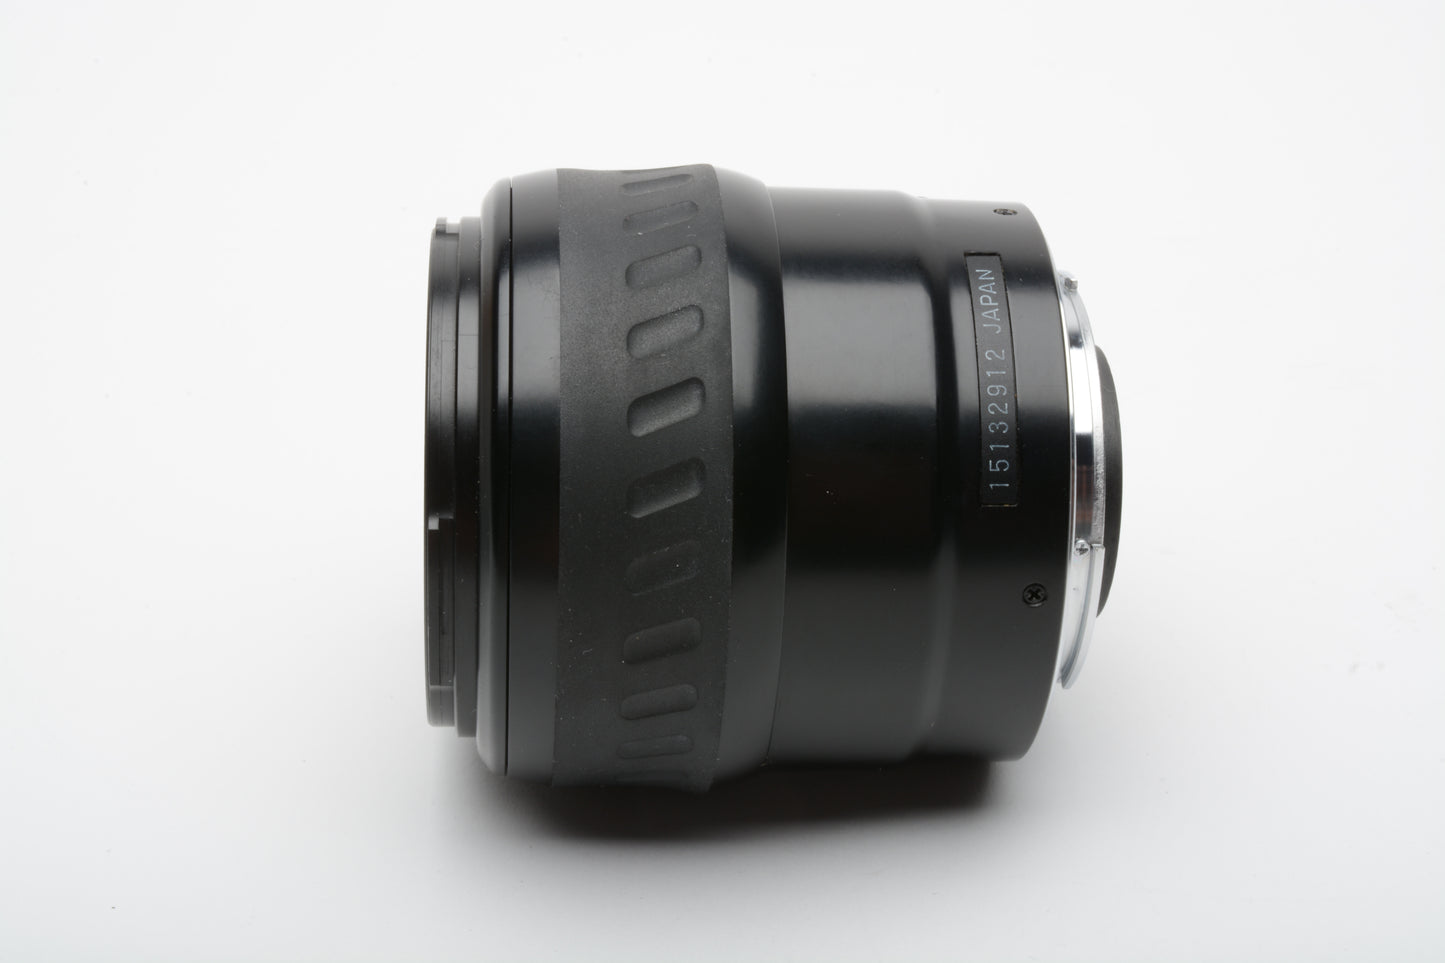 Minolta AF Maxxum 28-80mm F4-5.6 zoom Xi power zoom lens, caps